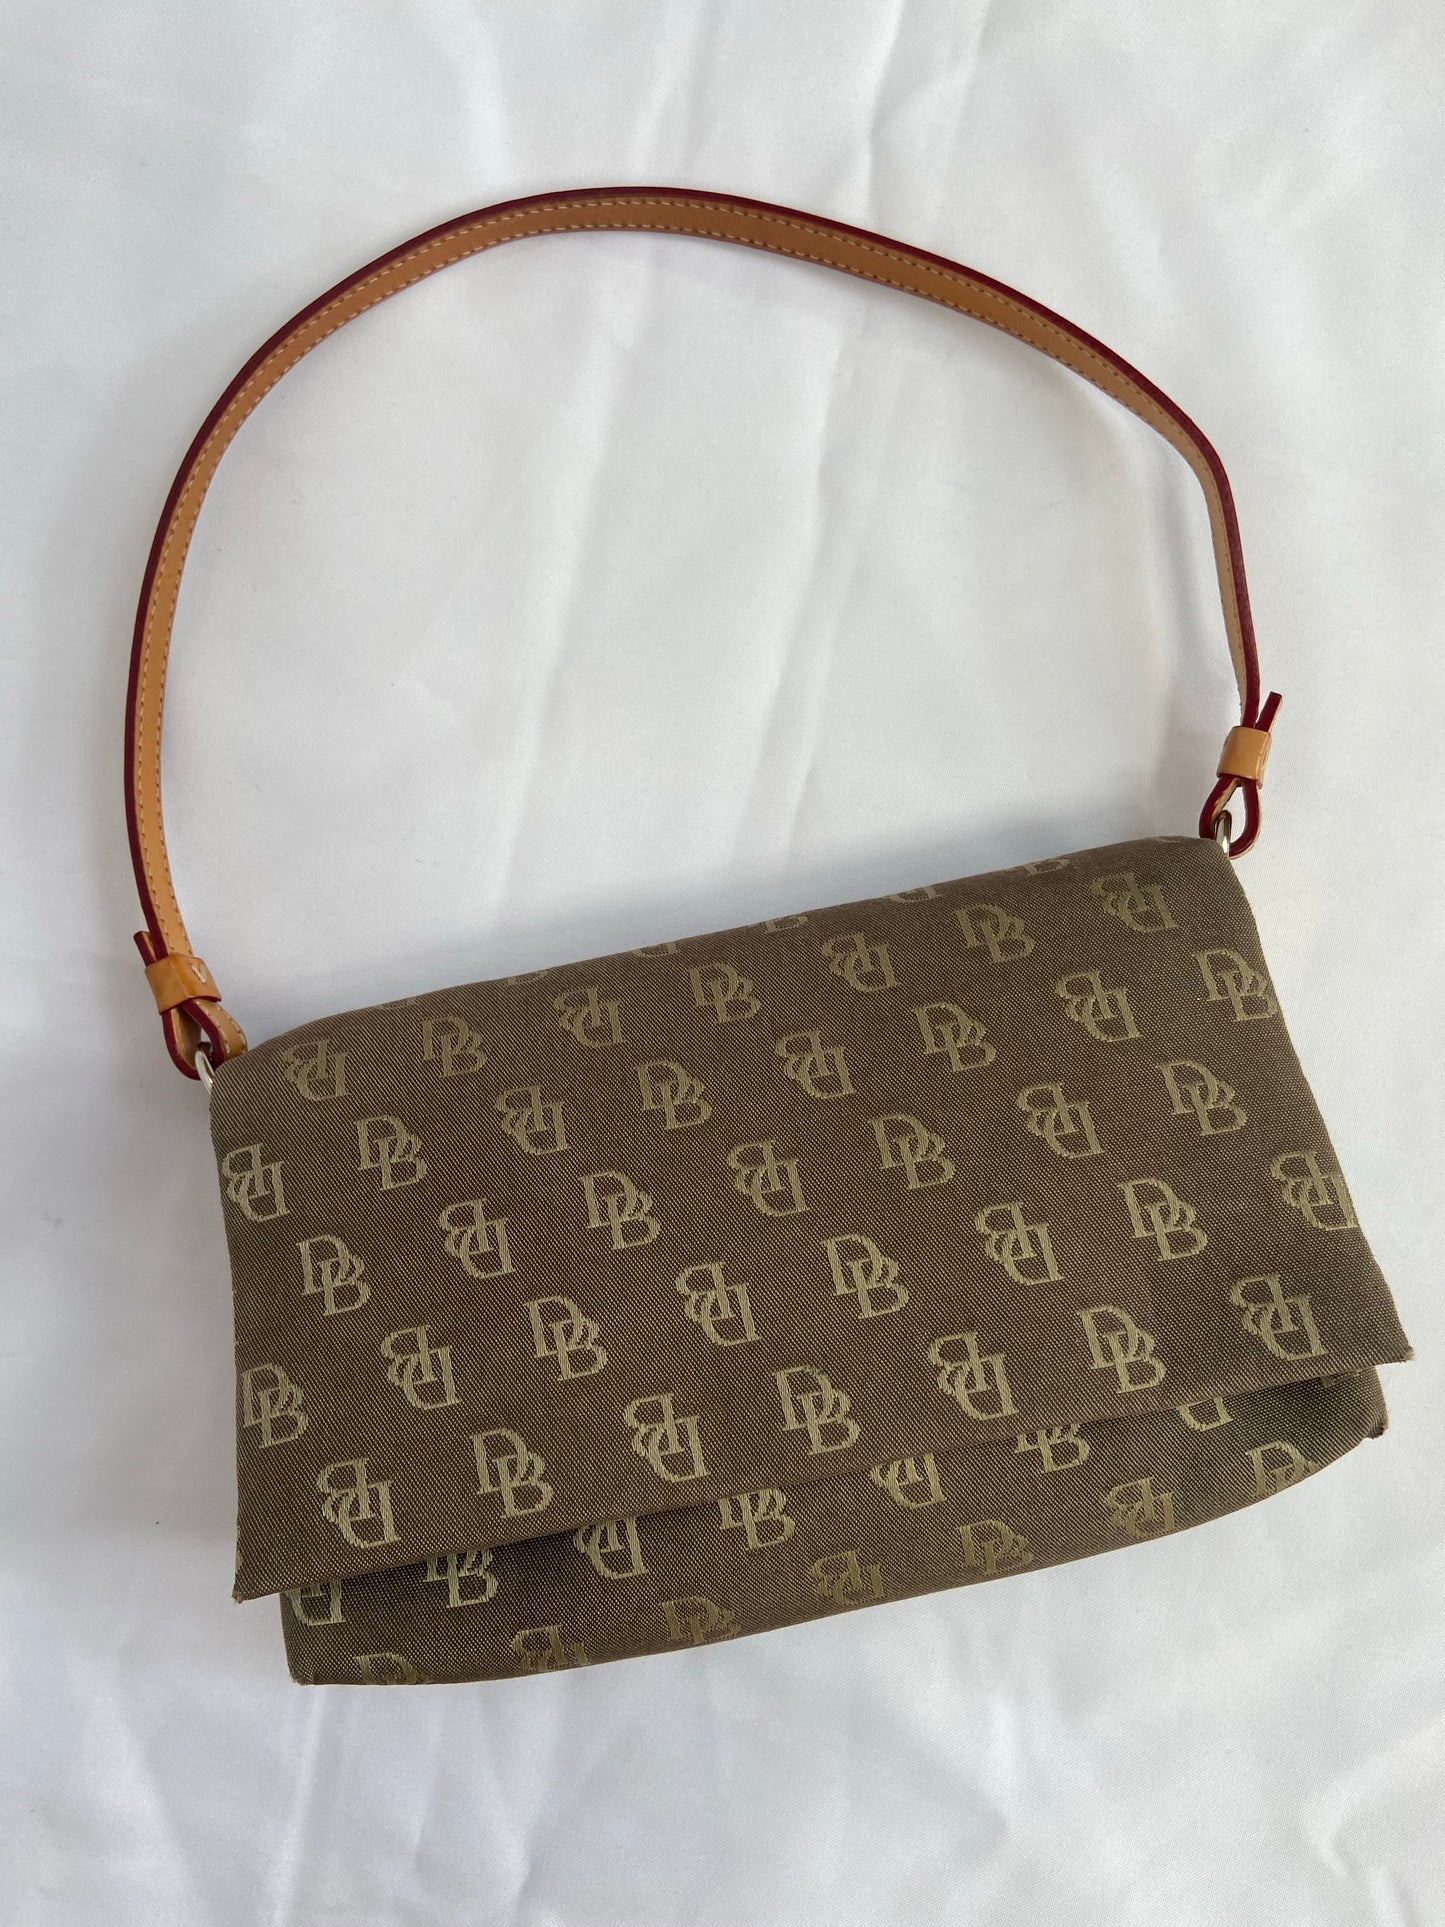 Dooney & Bourke Handbag